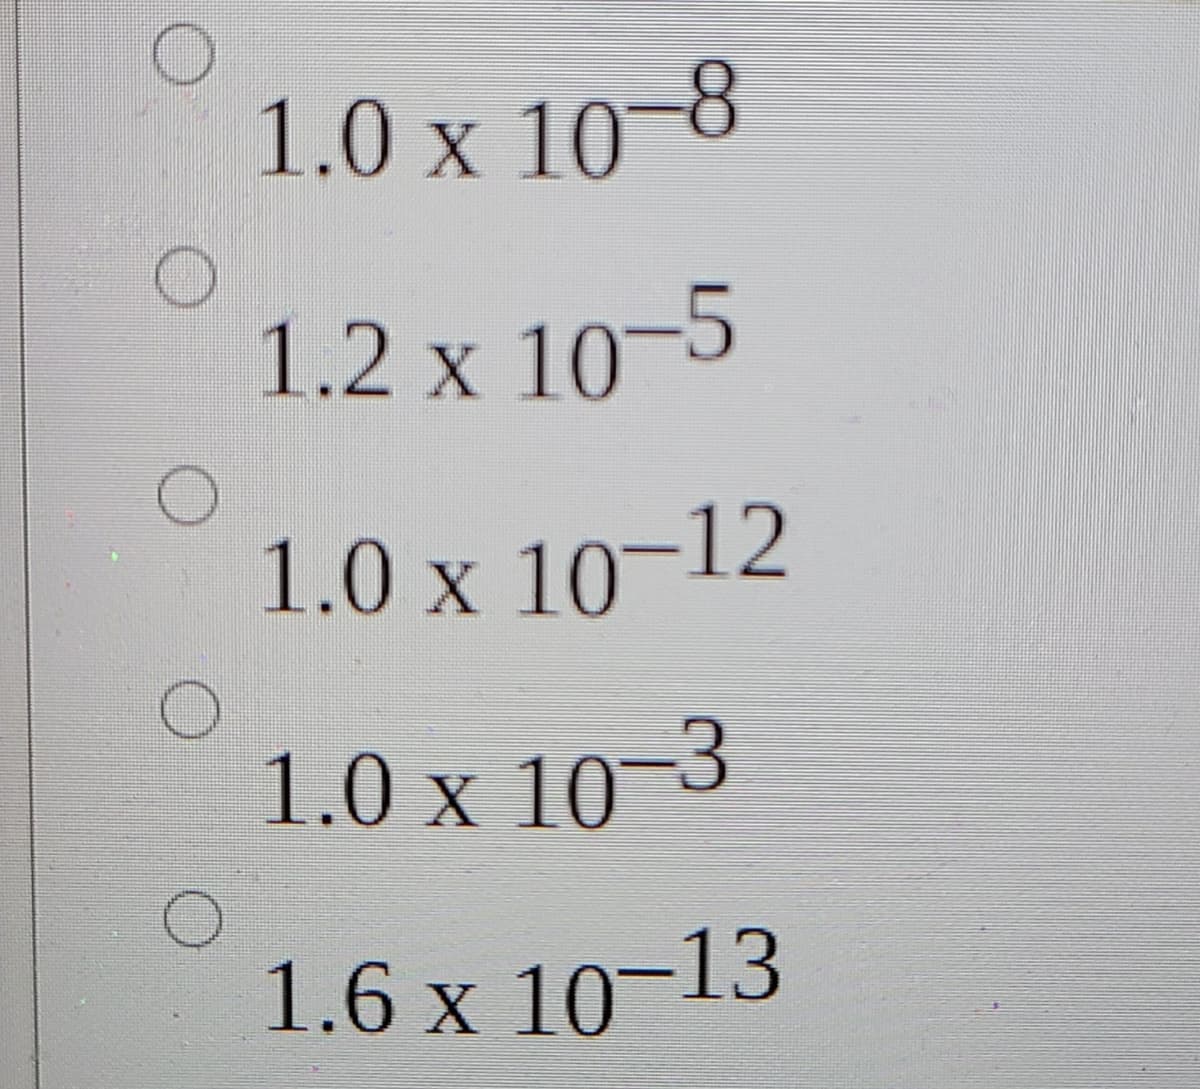 1.0 x 10-8
1.2 x 10-5
1.0 x 10-12
1.0 x 10-3
1.6 x 10-13
